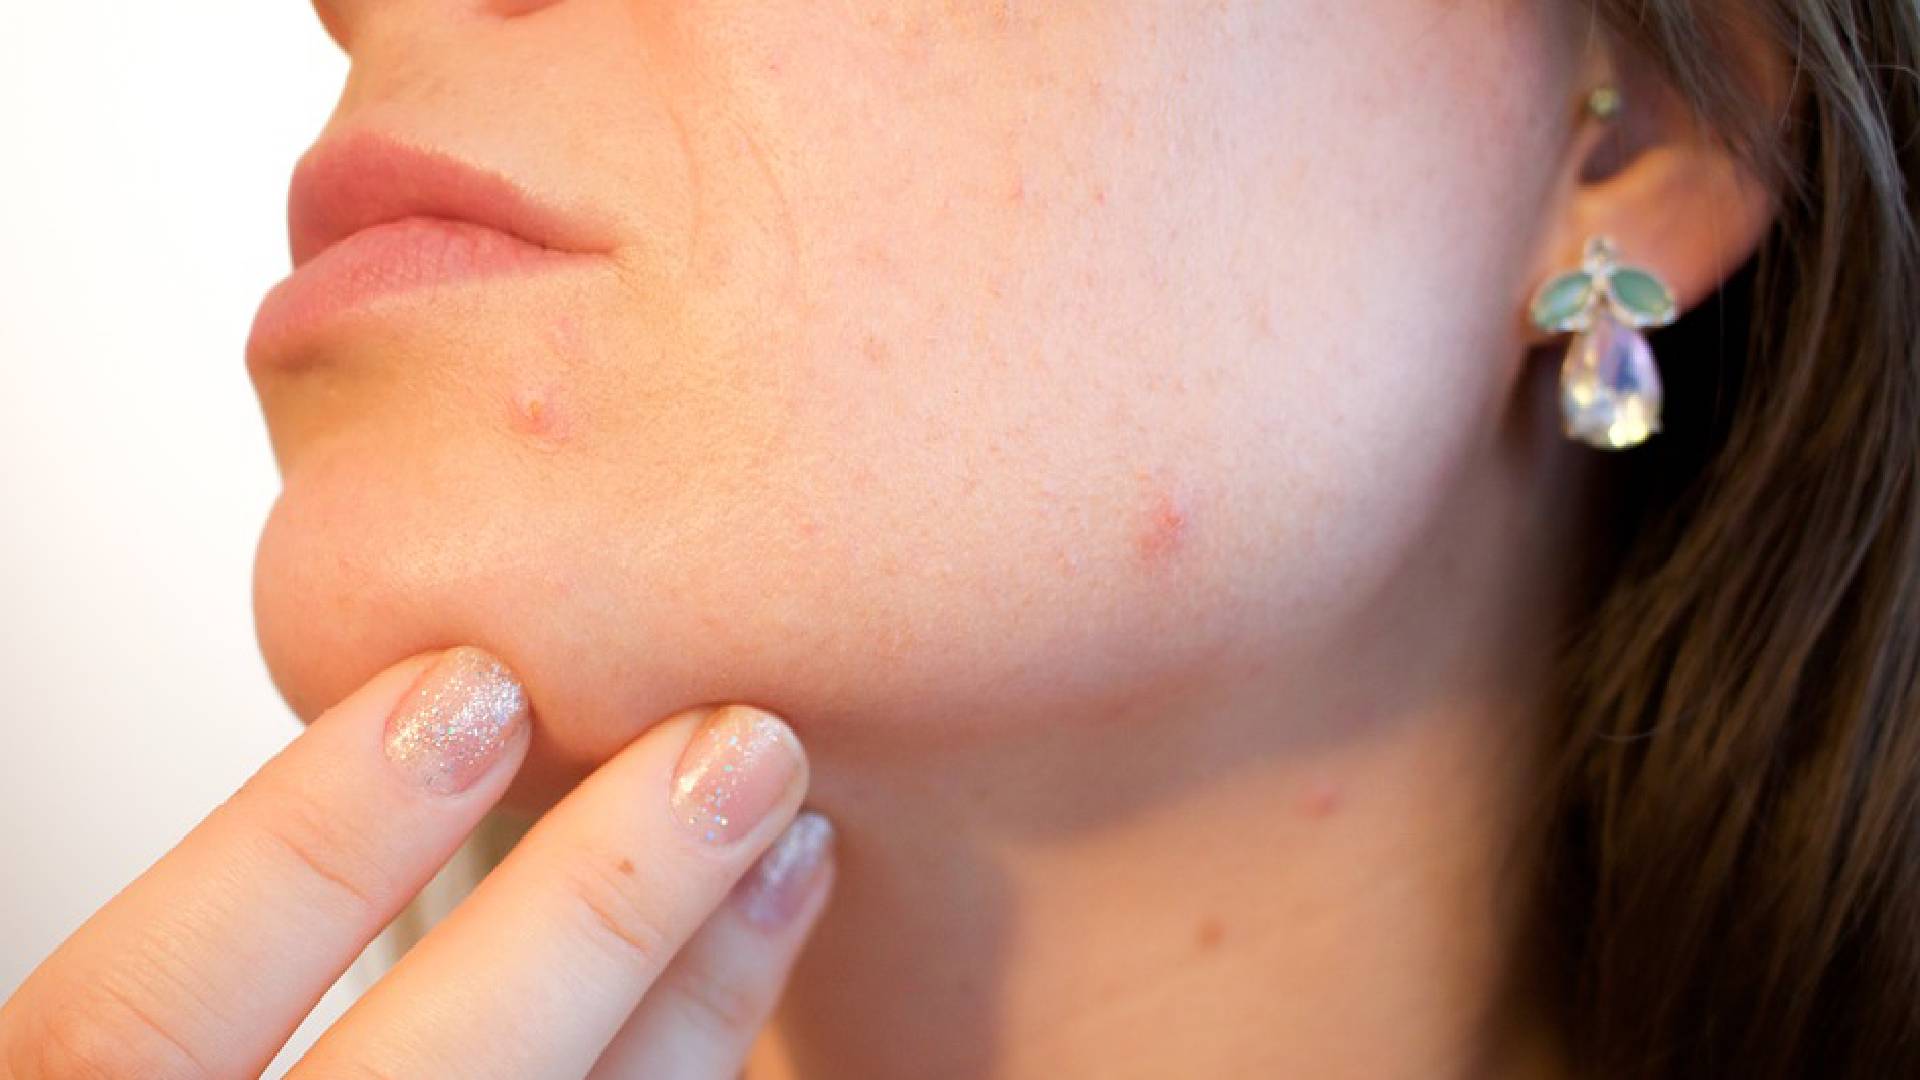 Skin Care Tips: चेहरे के दाग-धब्बों से हैं परेशान, तो इन घरेलू उपायों से रातों-रात हटाएं फेस के निशान